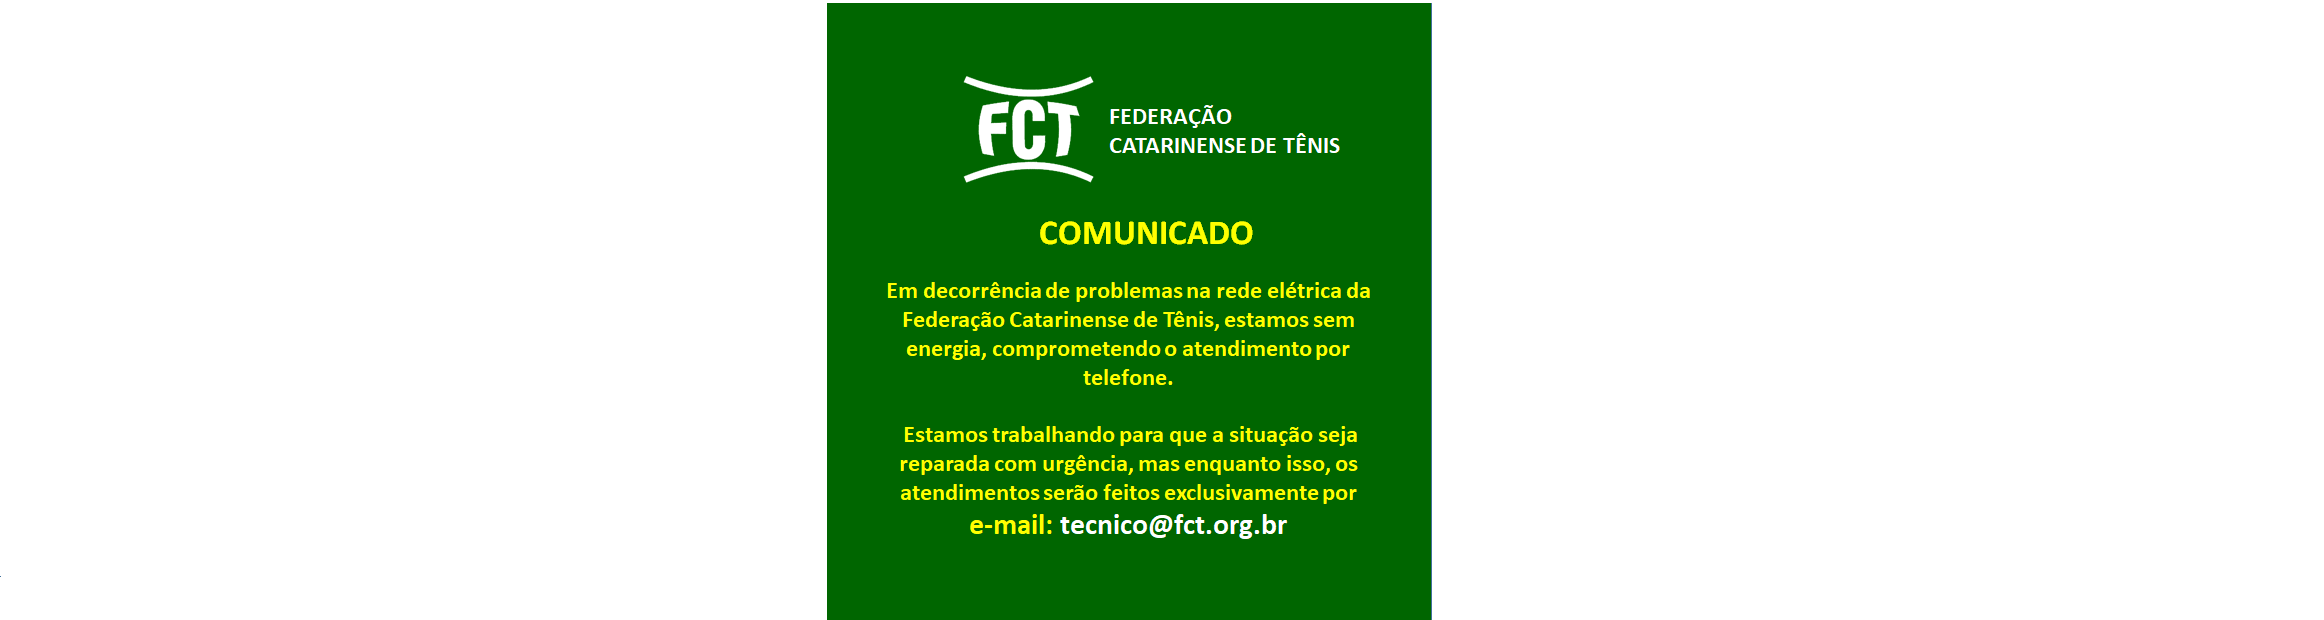 COMUNICADO FCT